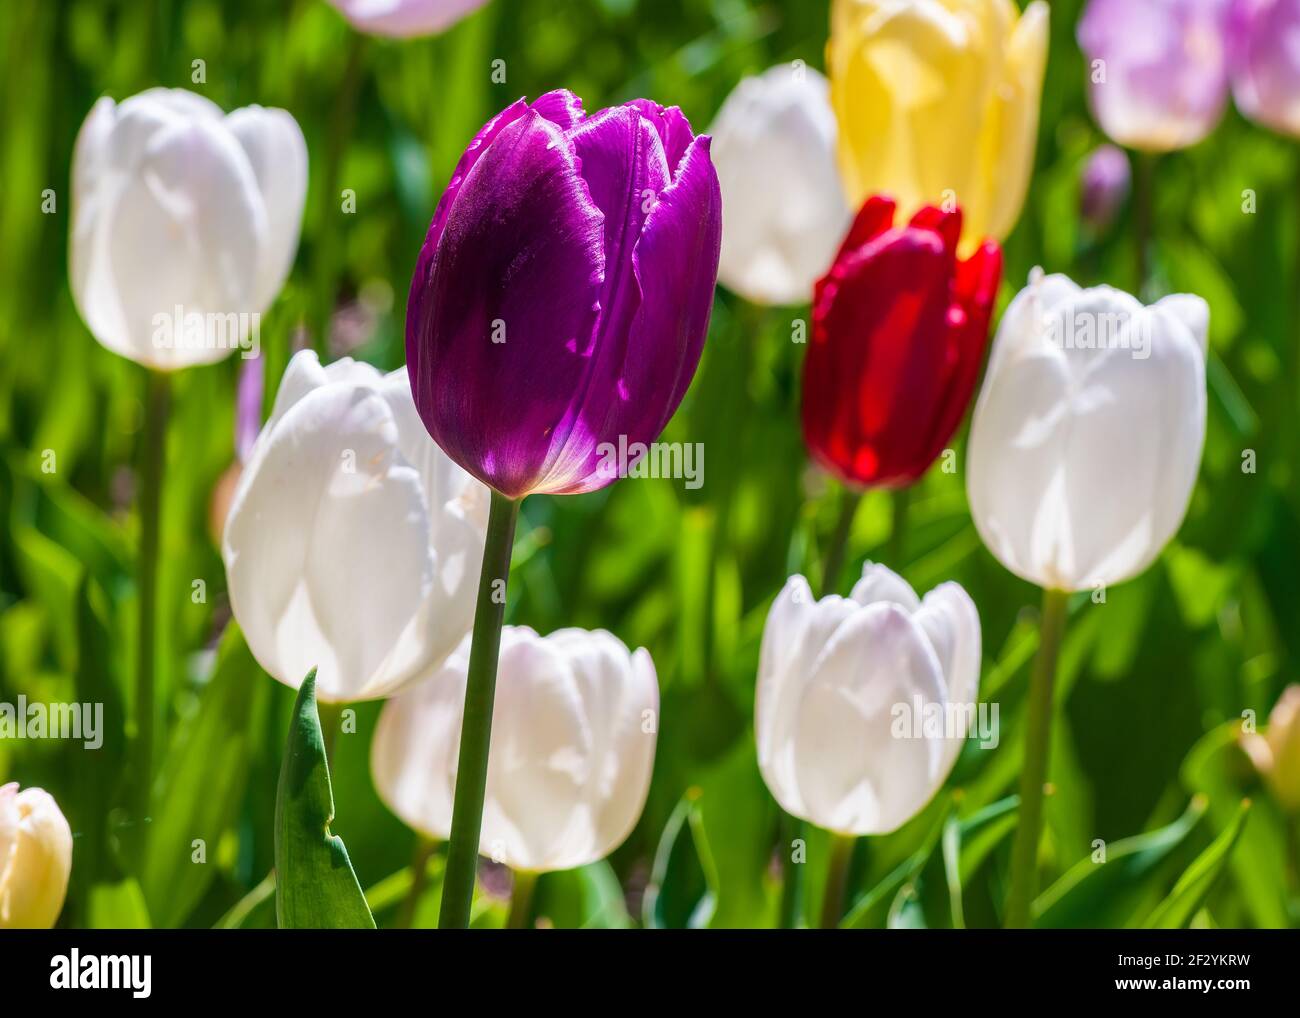 Disposizione colorata di eleganti tulipani di trionfo, nelle tonalità di viola, rosso, giallo e bianco. Giardino botanico del New England a Tower Hill, Boylston, Massachusetts. Foto Stock